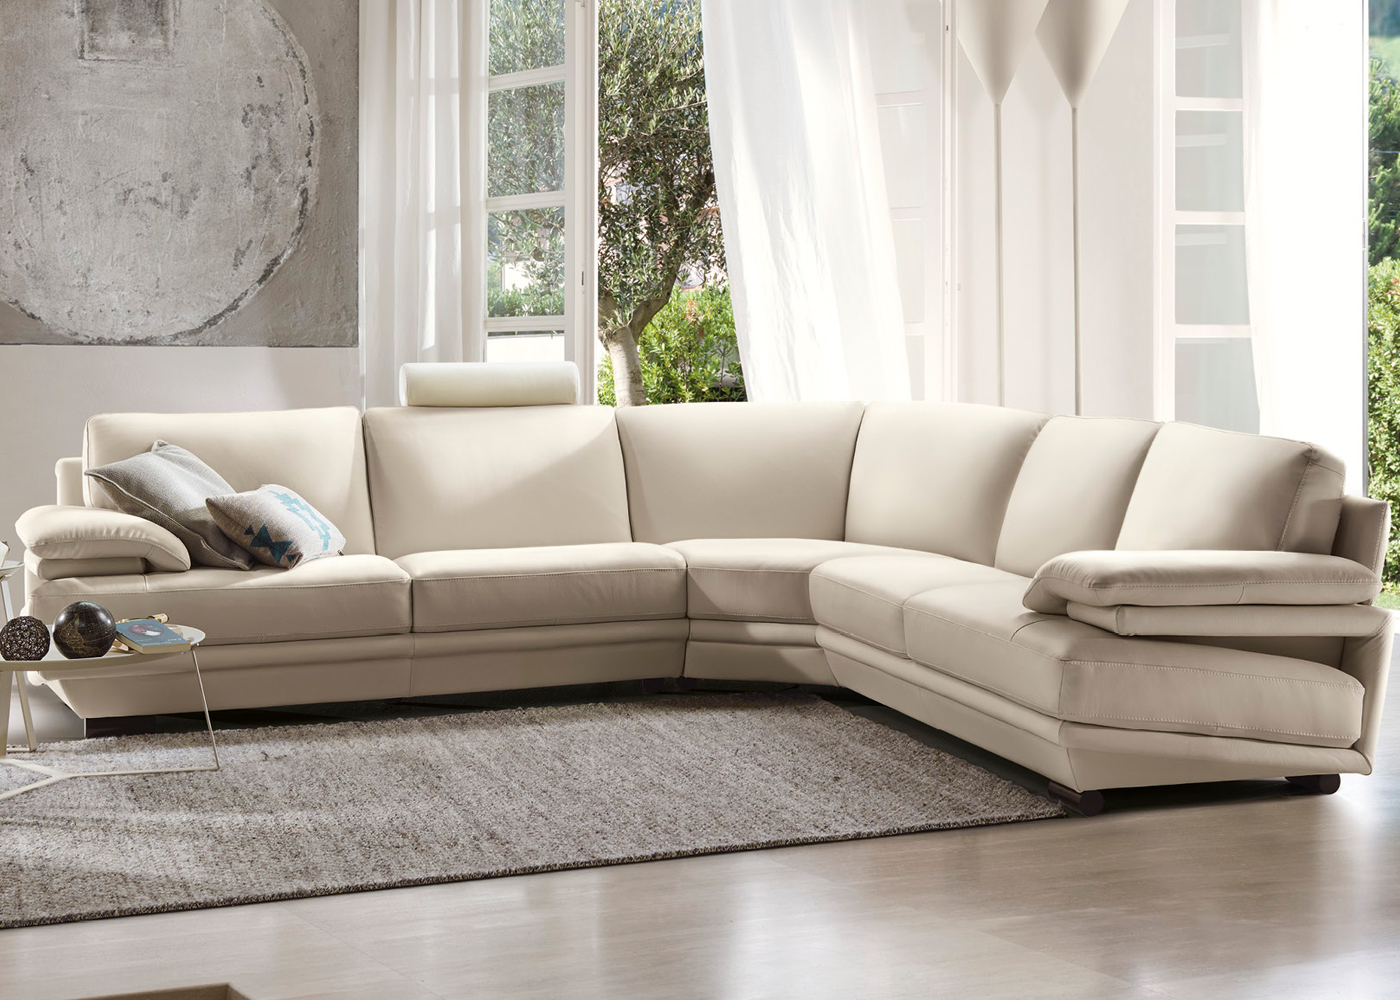 natuzzi italia leather sofa